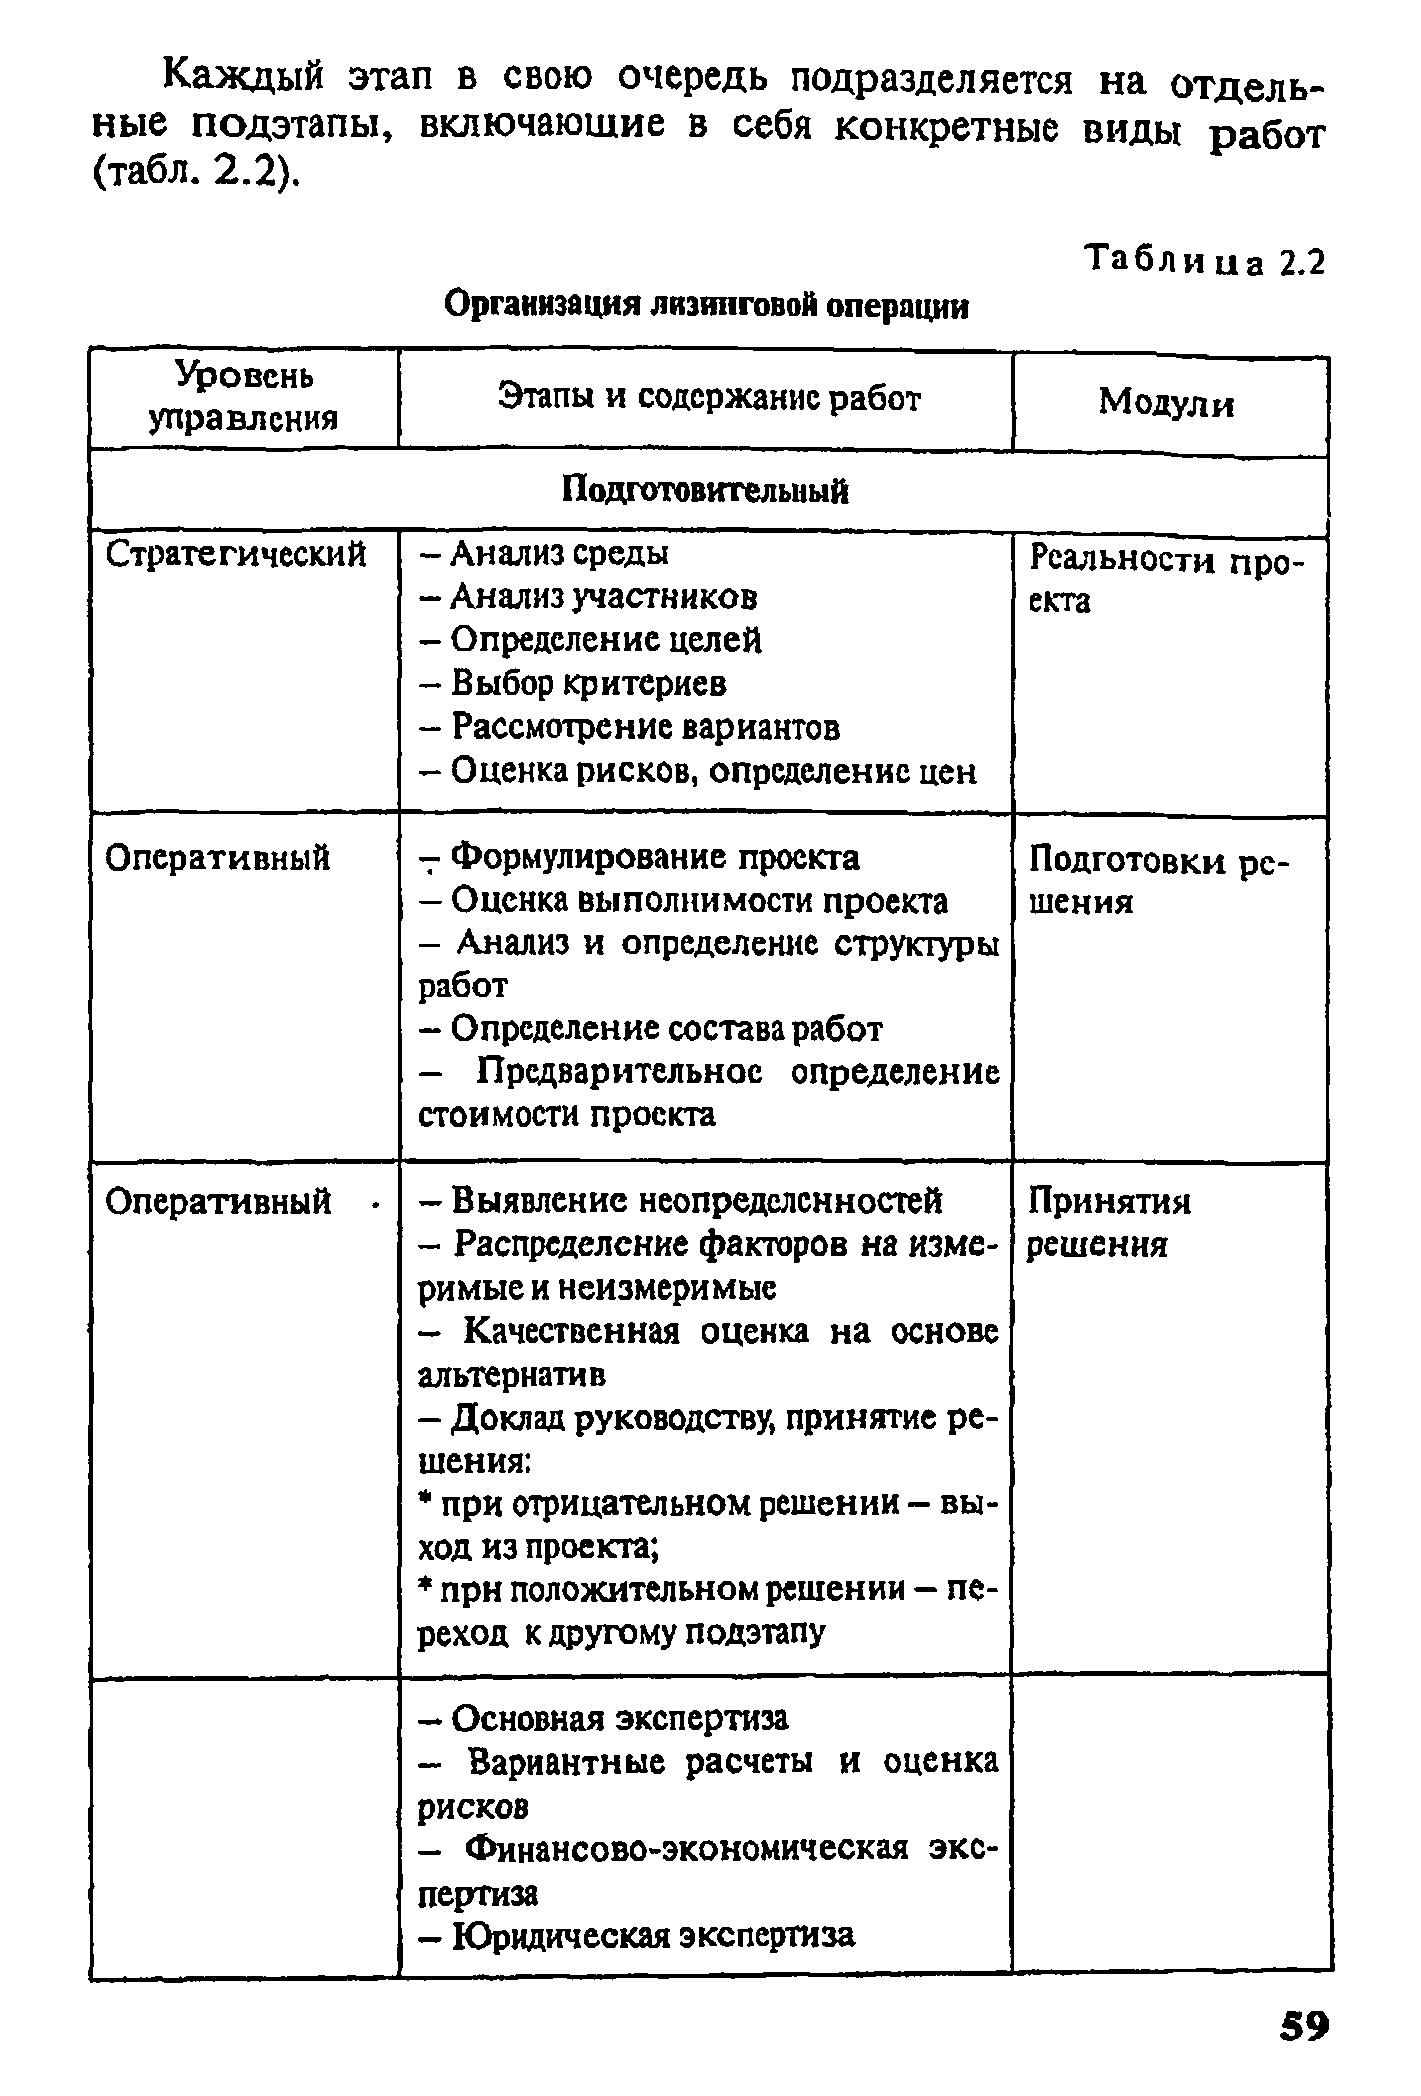 Каждый этап в свою очередь подразделяется на отдельные подэтапы, включающие в себя конкретные виды работ (табл. 2.2).
